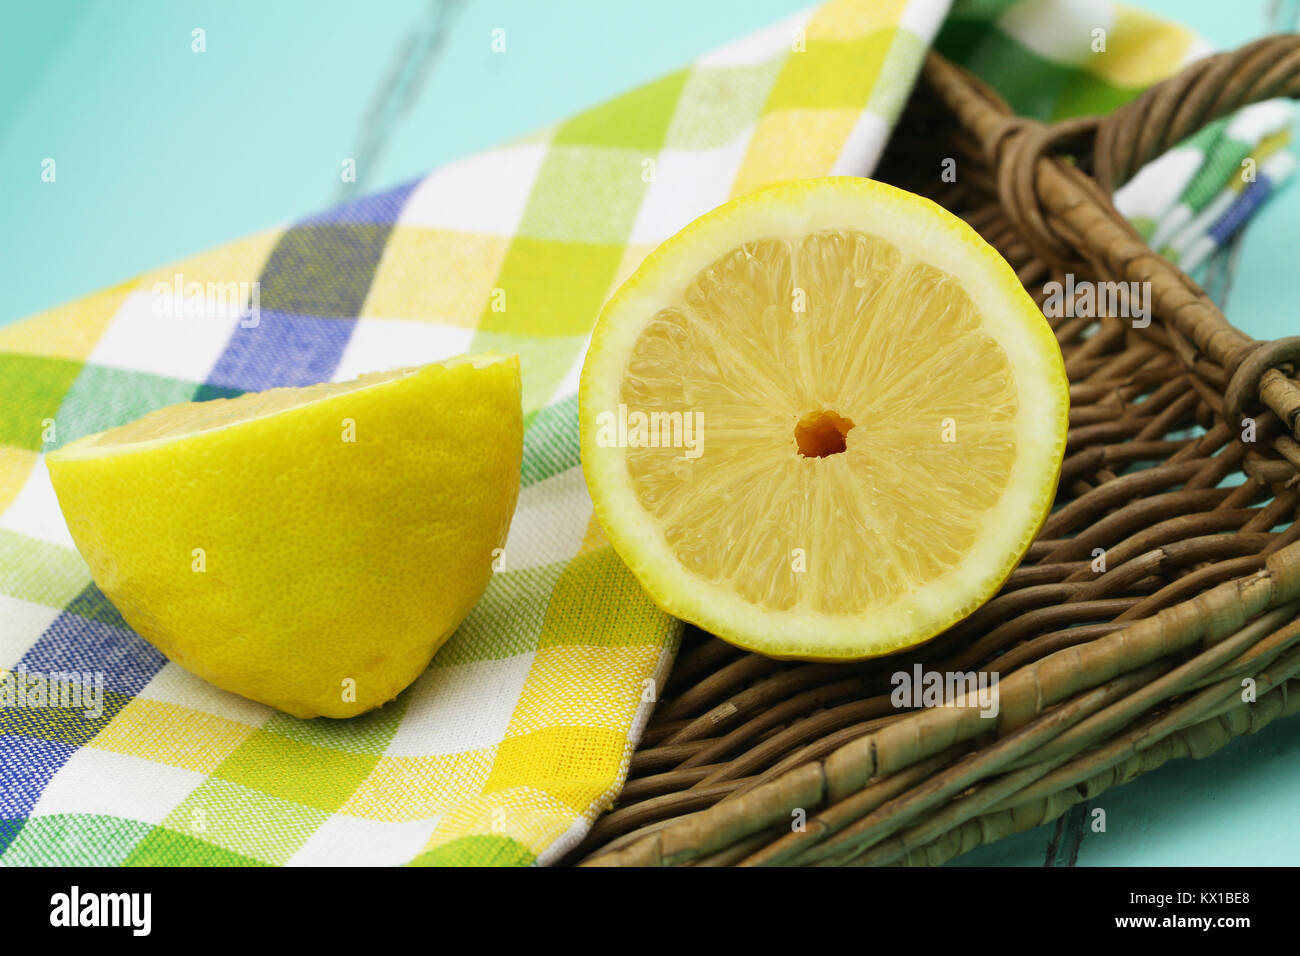 Deux moitiés de citron juteux sur bac en osier, gros plan Banque D'Images